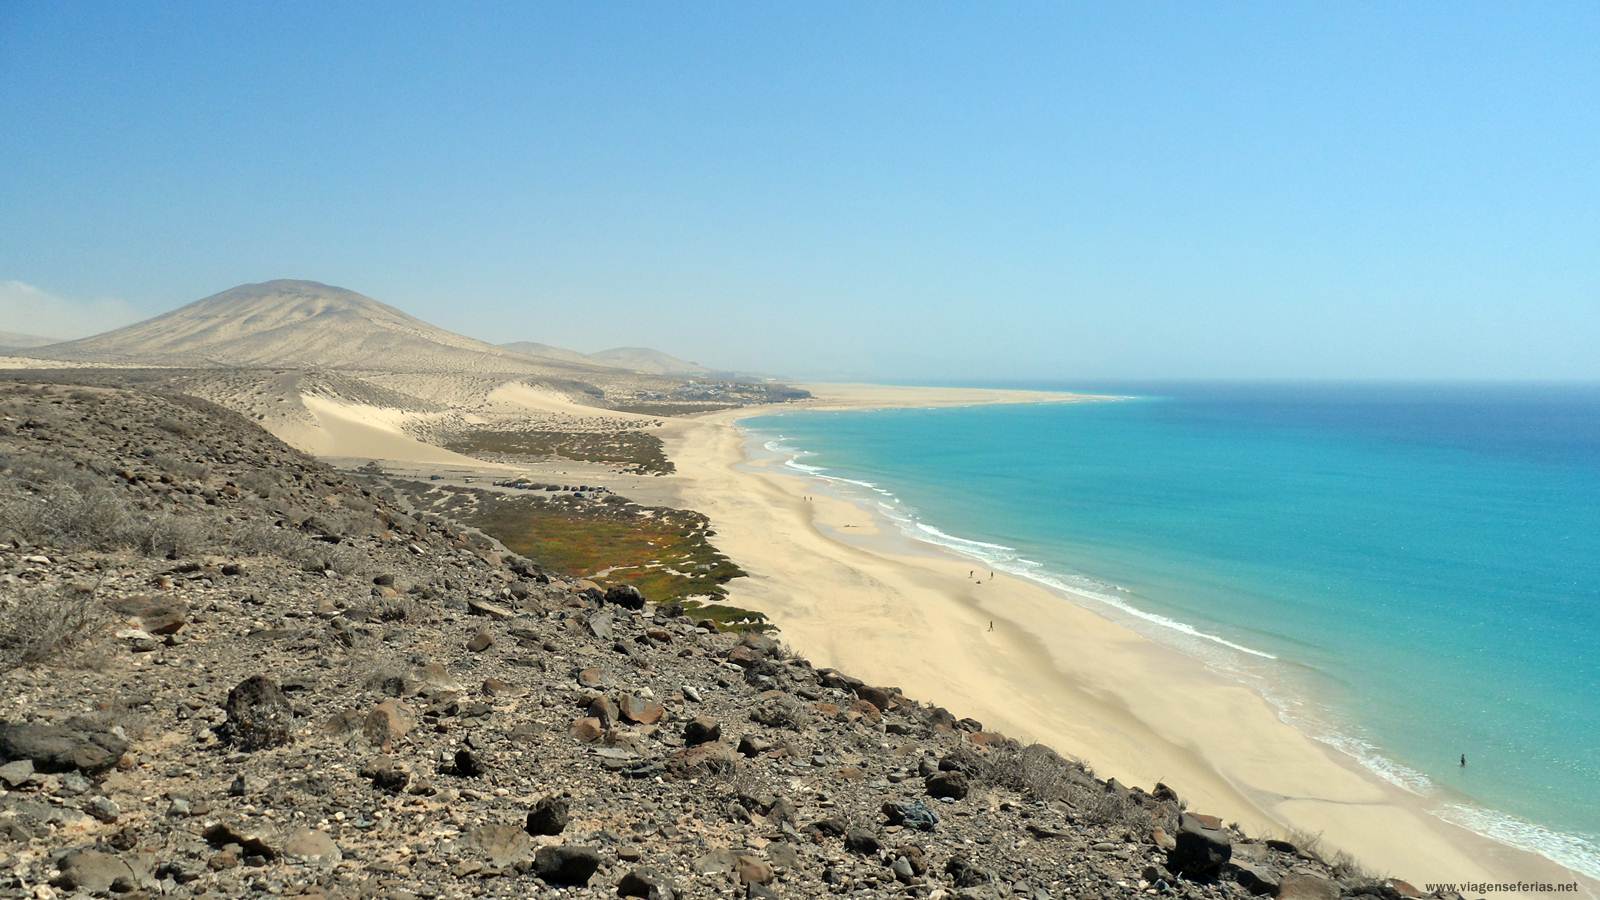 Praia Risco del Paso vista do Mirador no Sotavento de Fuerteventura